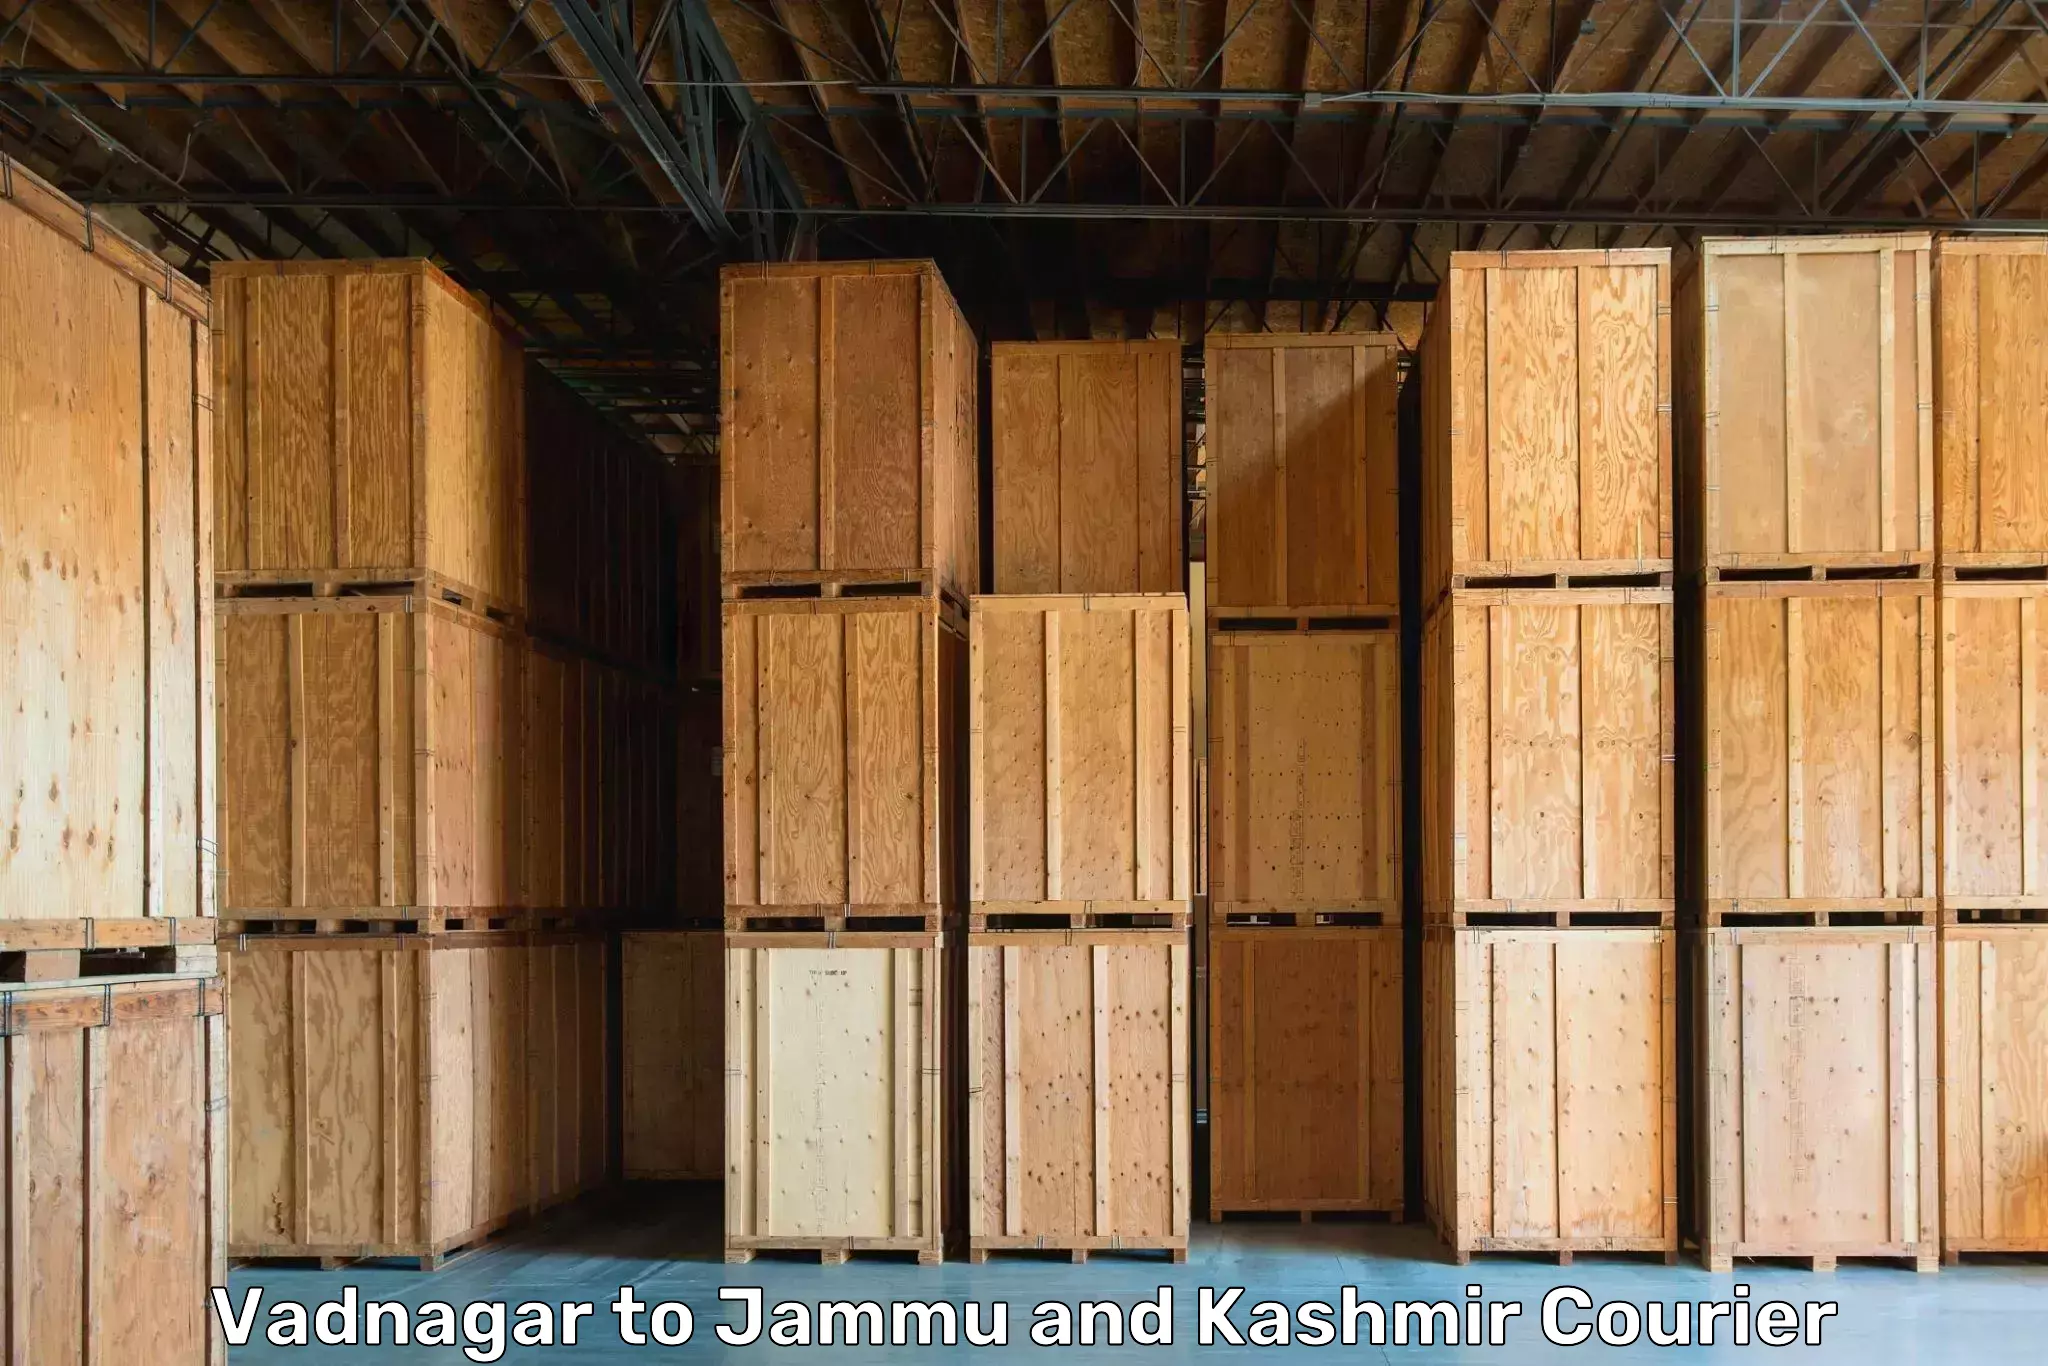 Residential relocation services in Vadnagar to Srinagar Kashmir